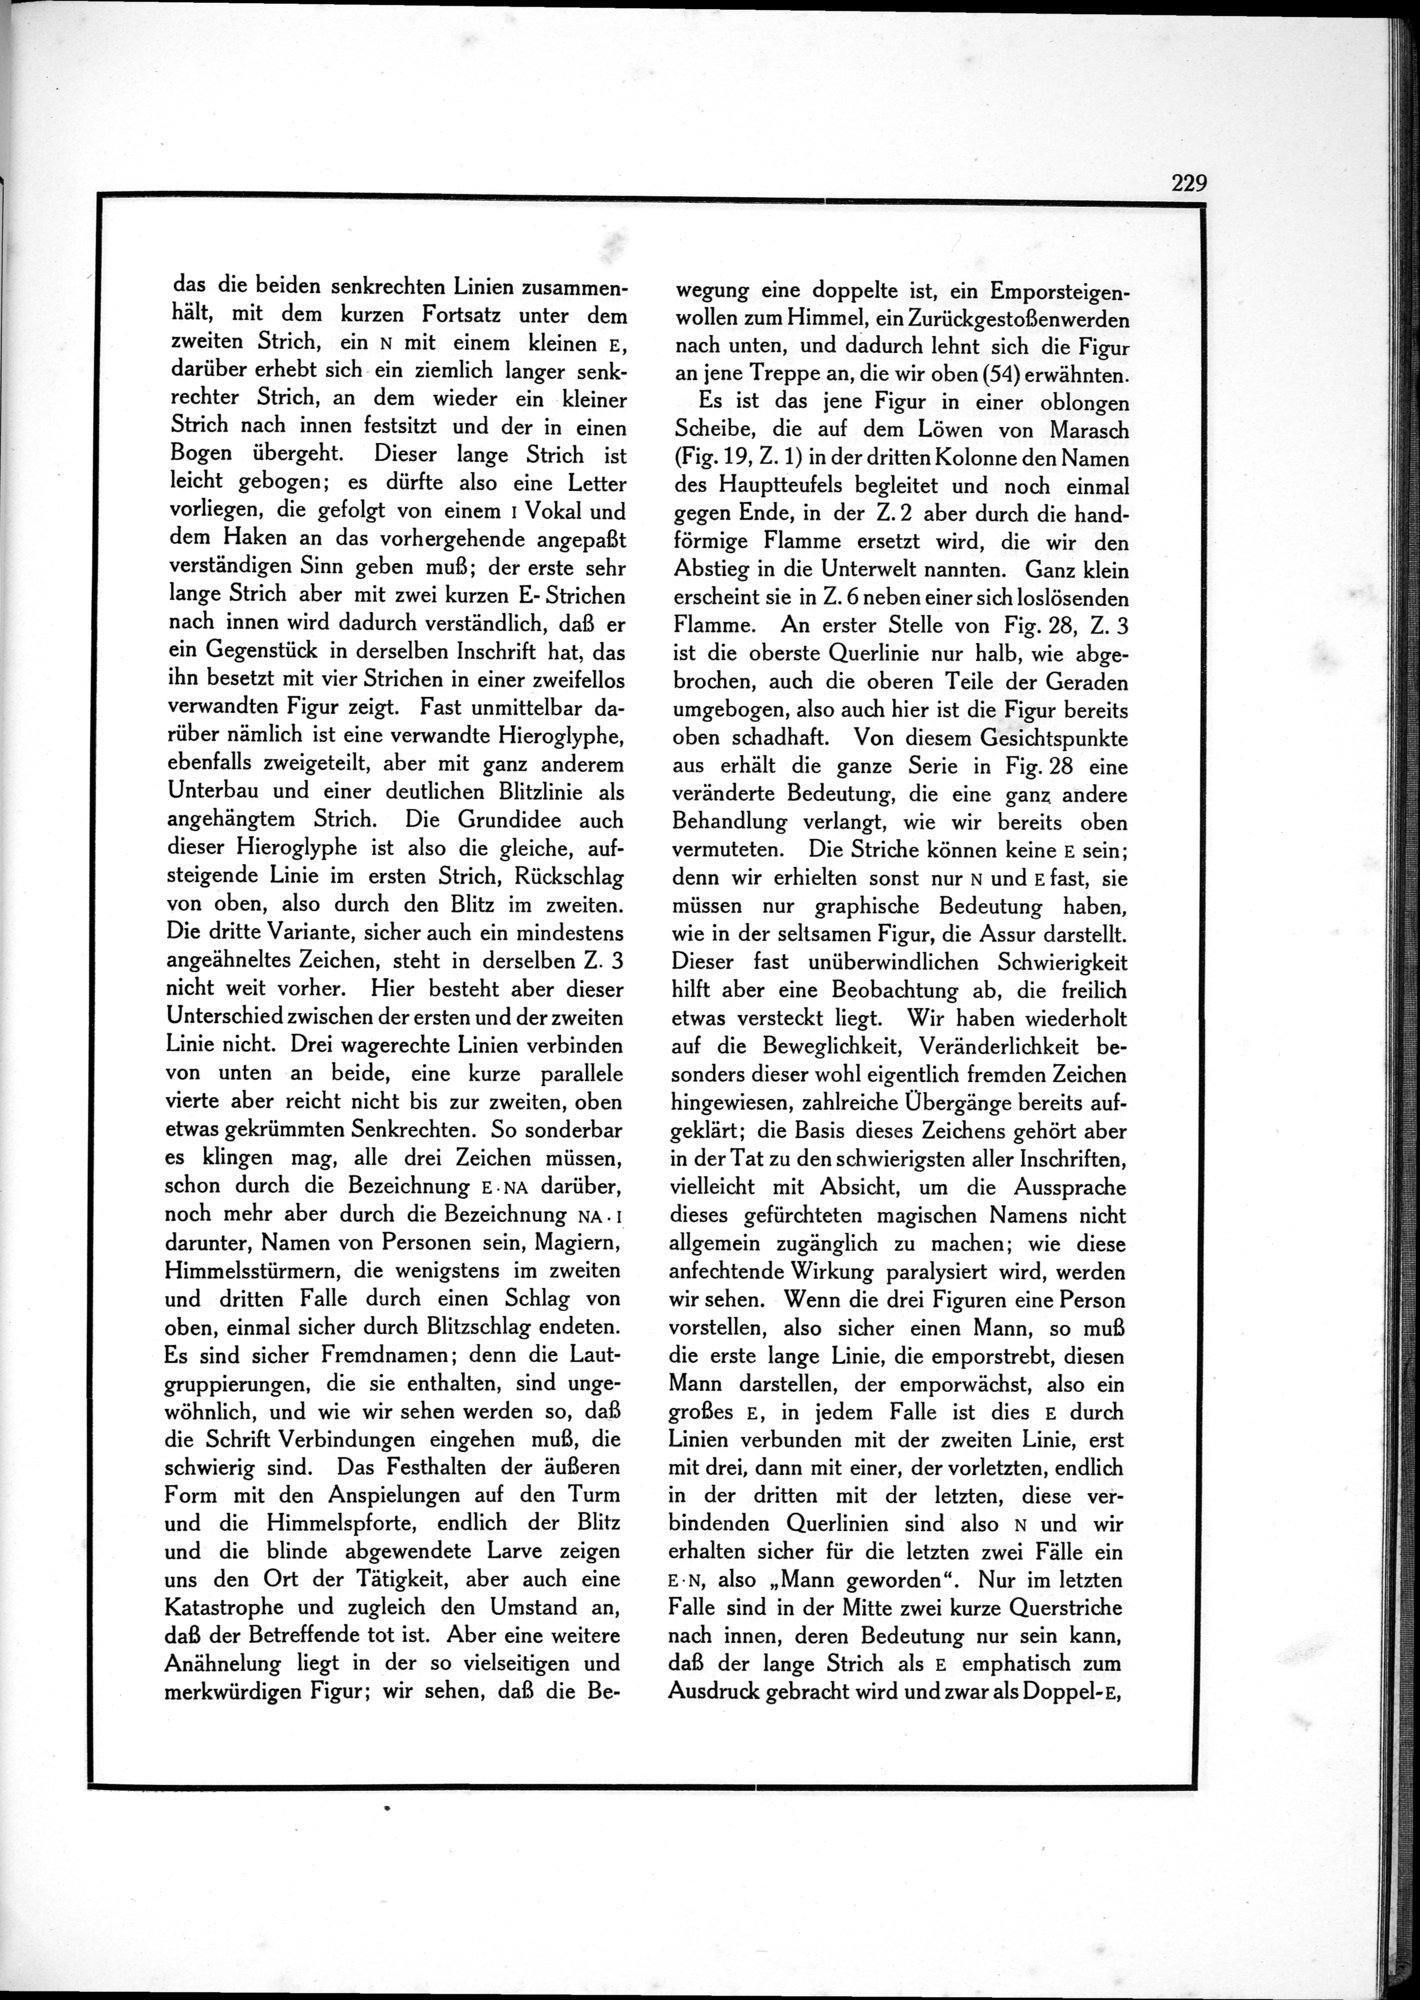 Die Teufel des Avesta und Ihre Beziehungen zur Ikonographie des Buddhismus Zentral-Asiens : vol.1 / Page 233 (Grayscale High Resolution Image)